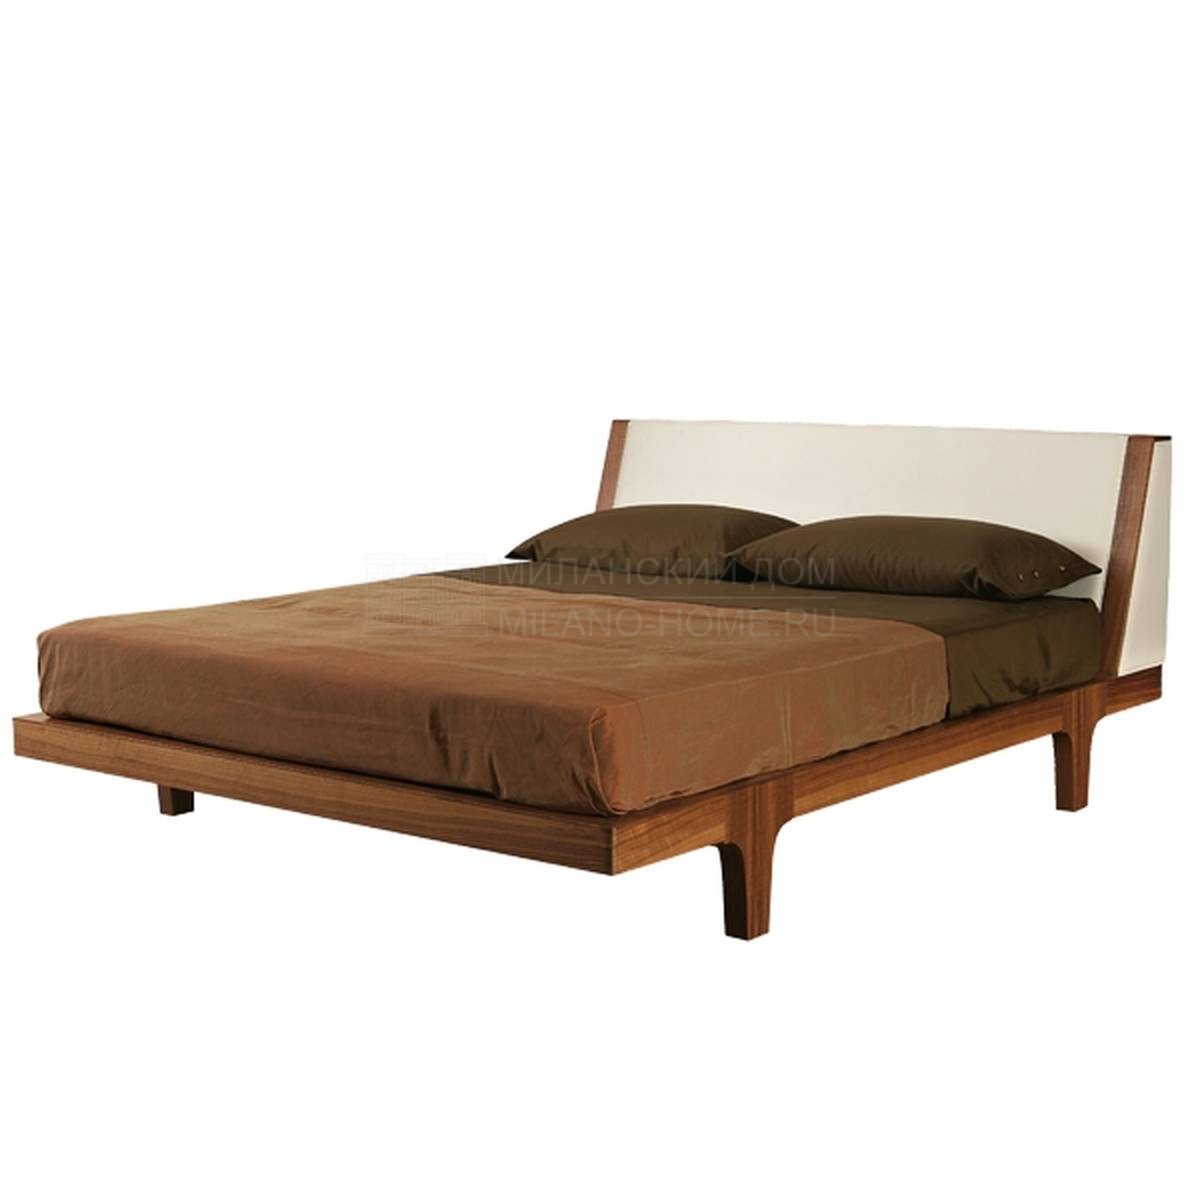 Кровать с комбинированным изголовьем Malibù art.2880/N из Италии фабрики MORELATO